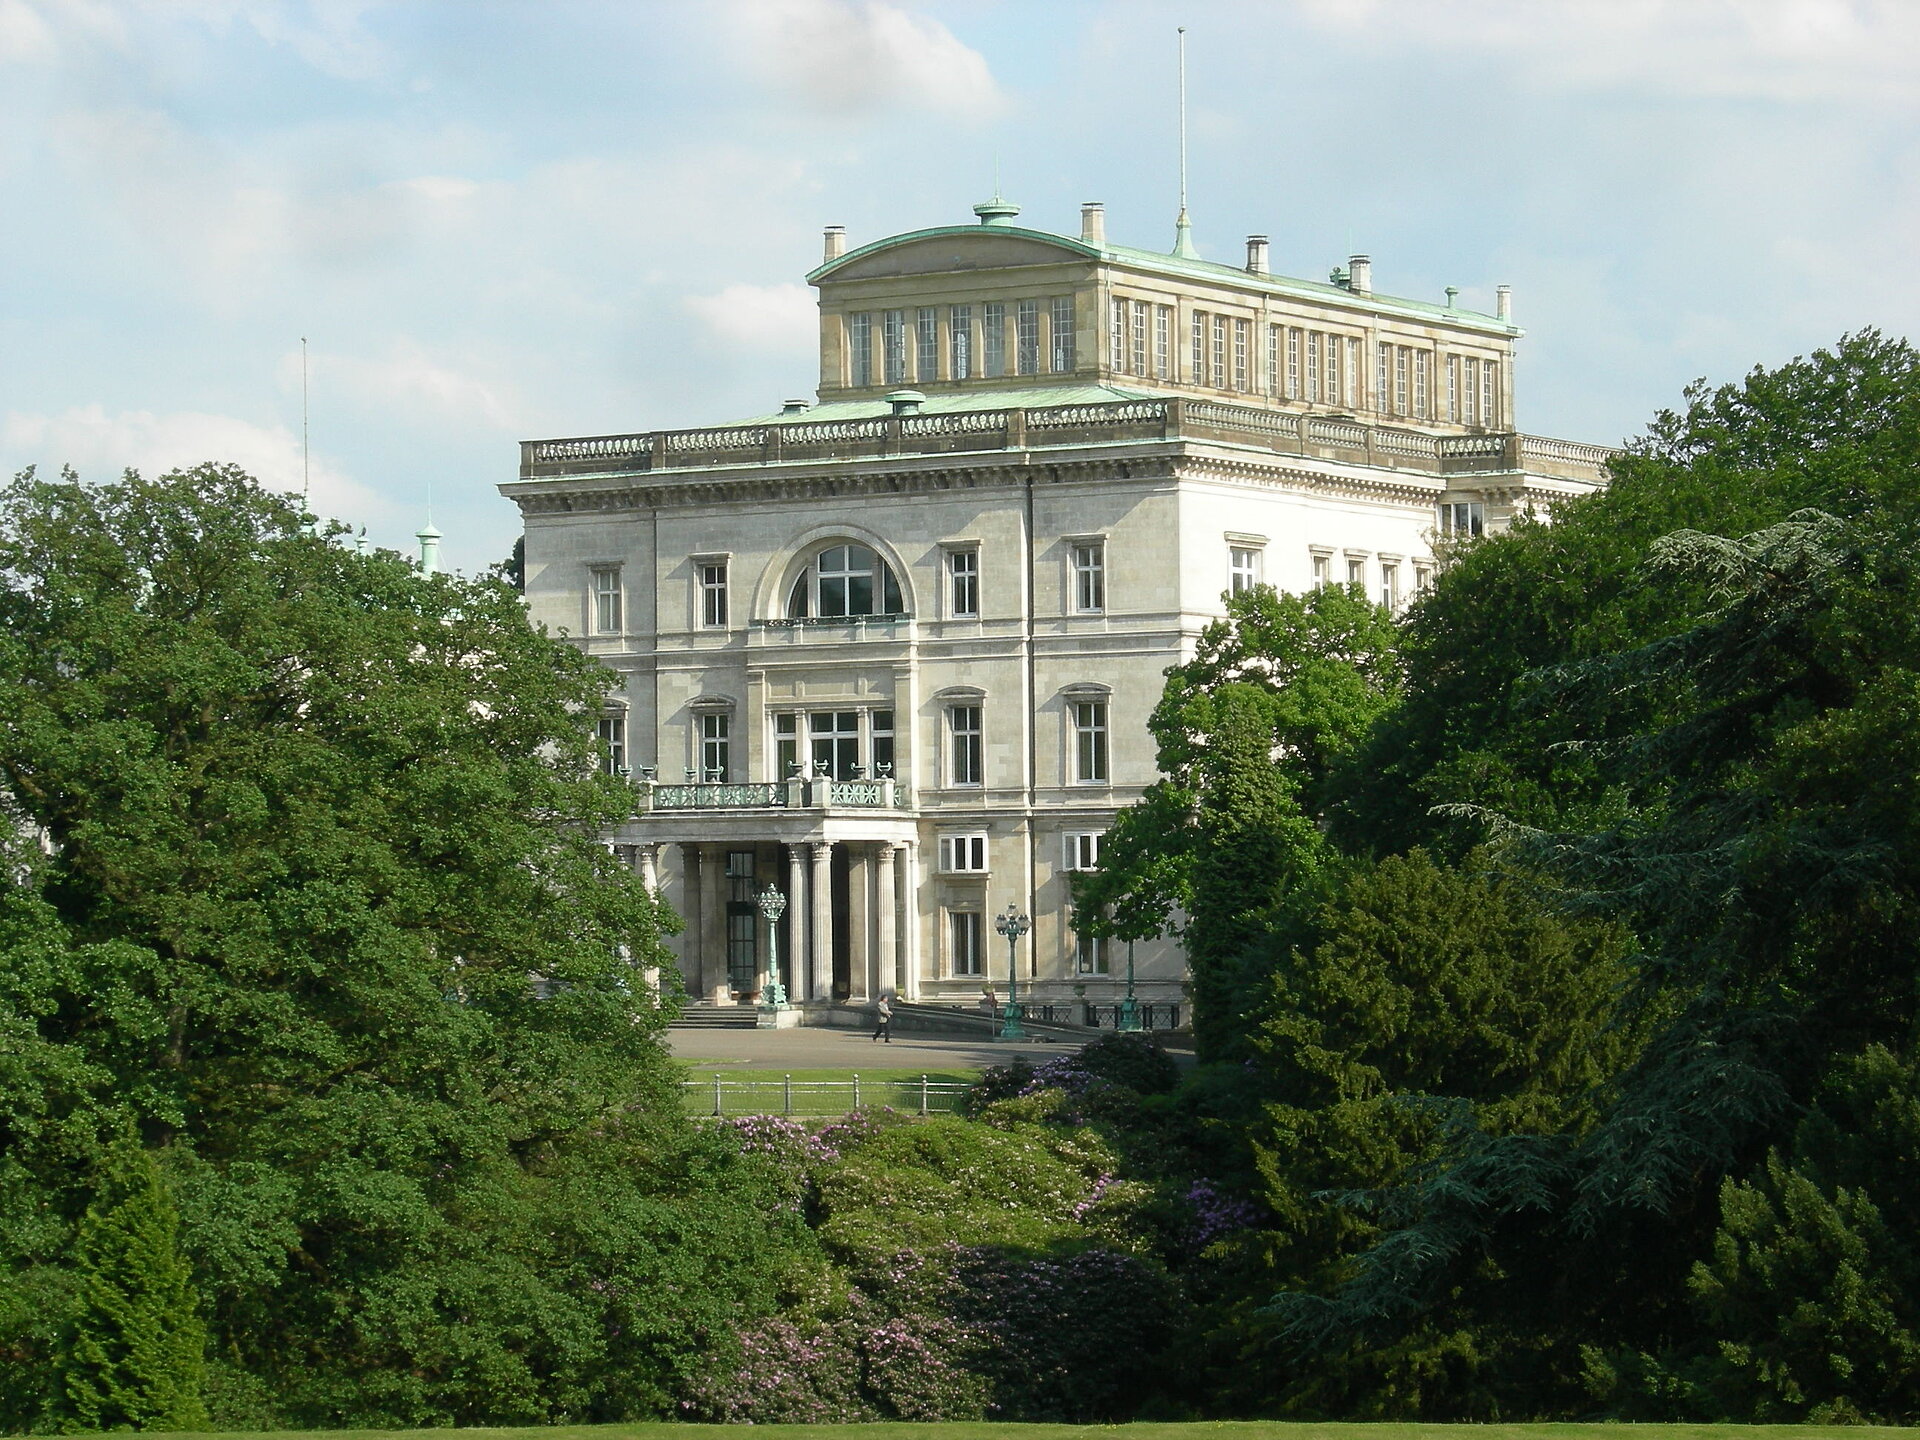 Die Villa Hügel in Essen, ehemaliger Wohnsitz der Familie Krupp, ist ein Ankerpunkt auf der Route der Industriekultur.